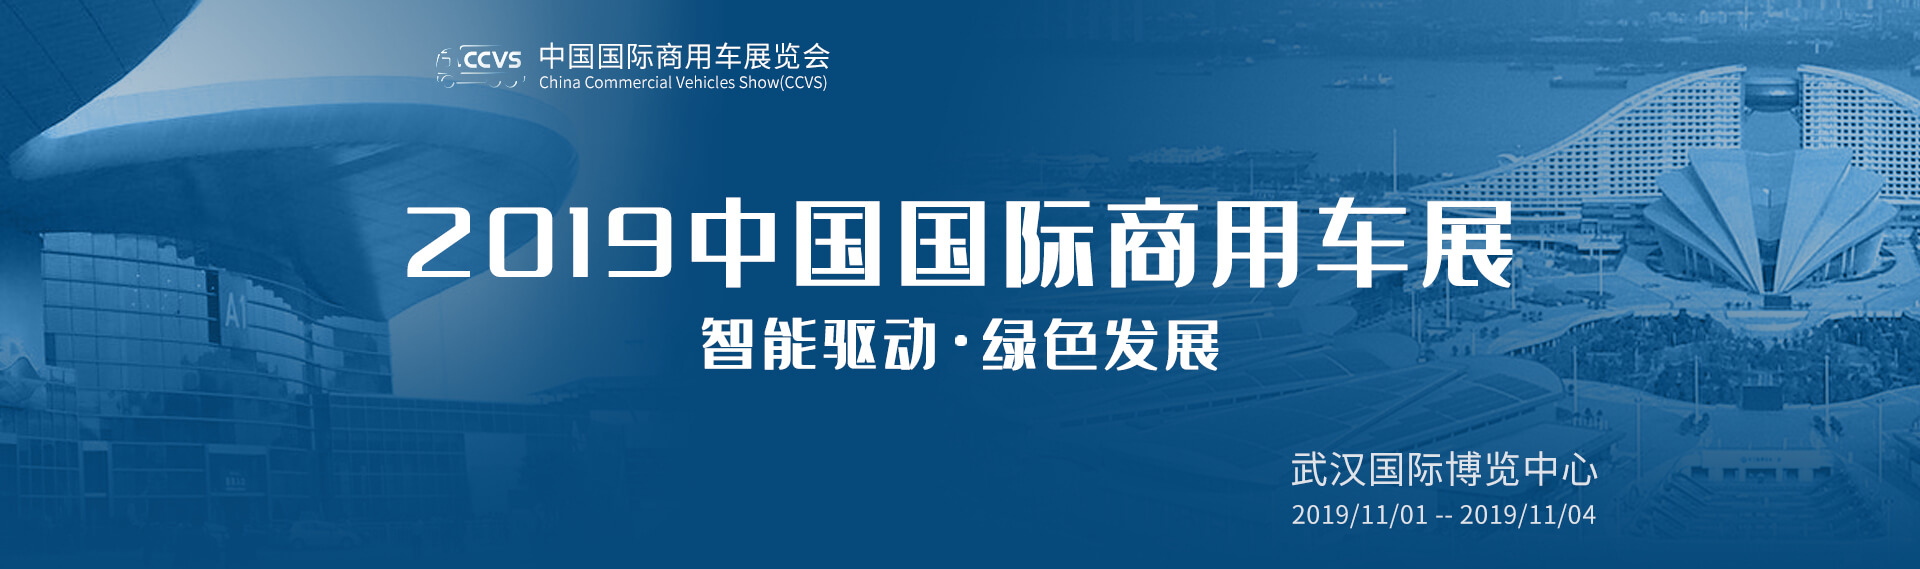 南京依维柯展台 2019中国国际商用车展览会